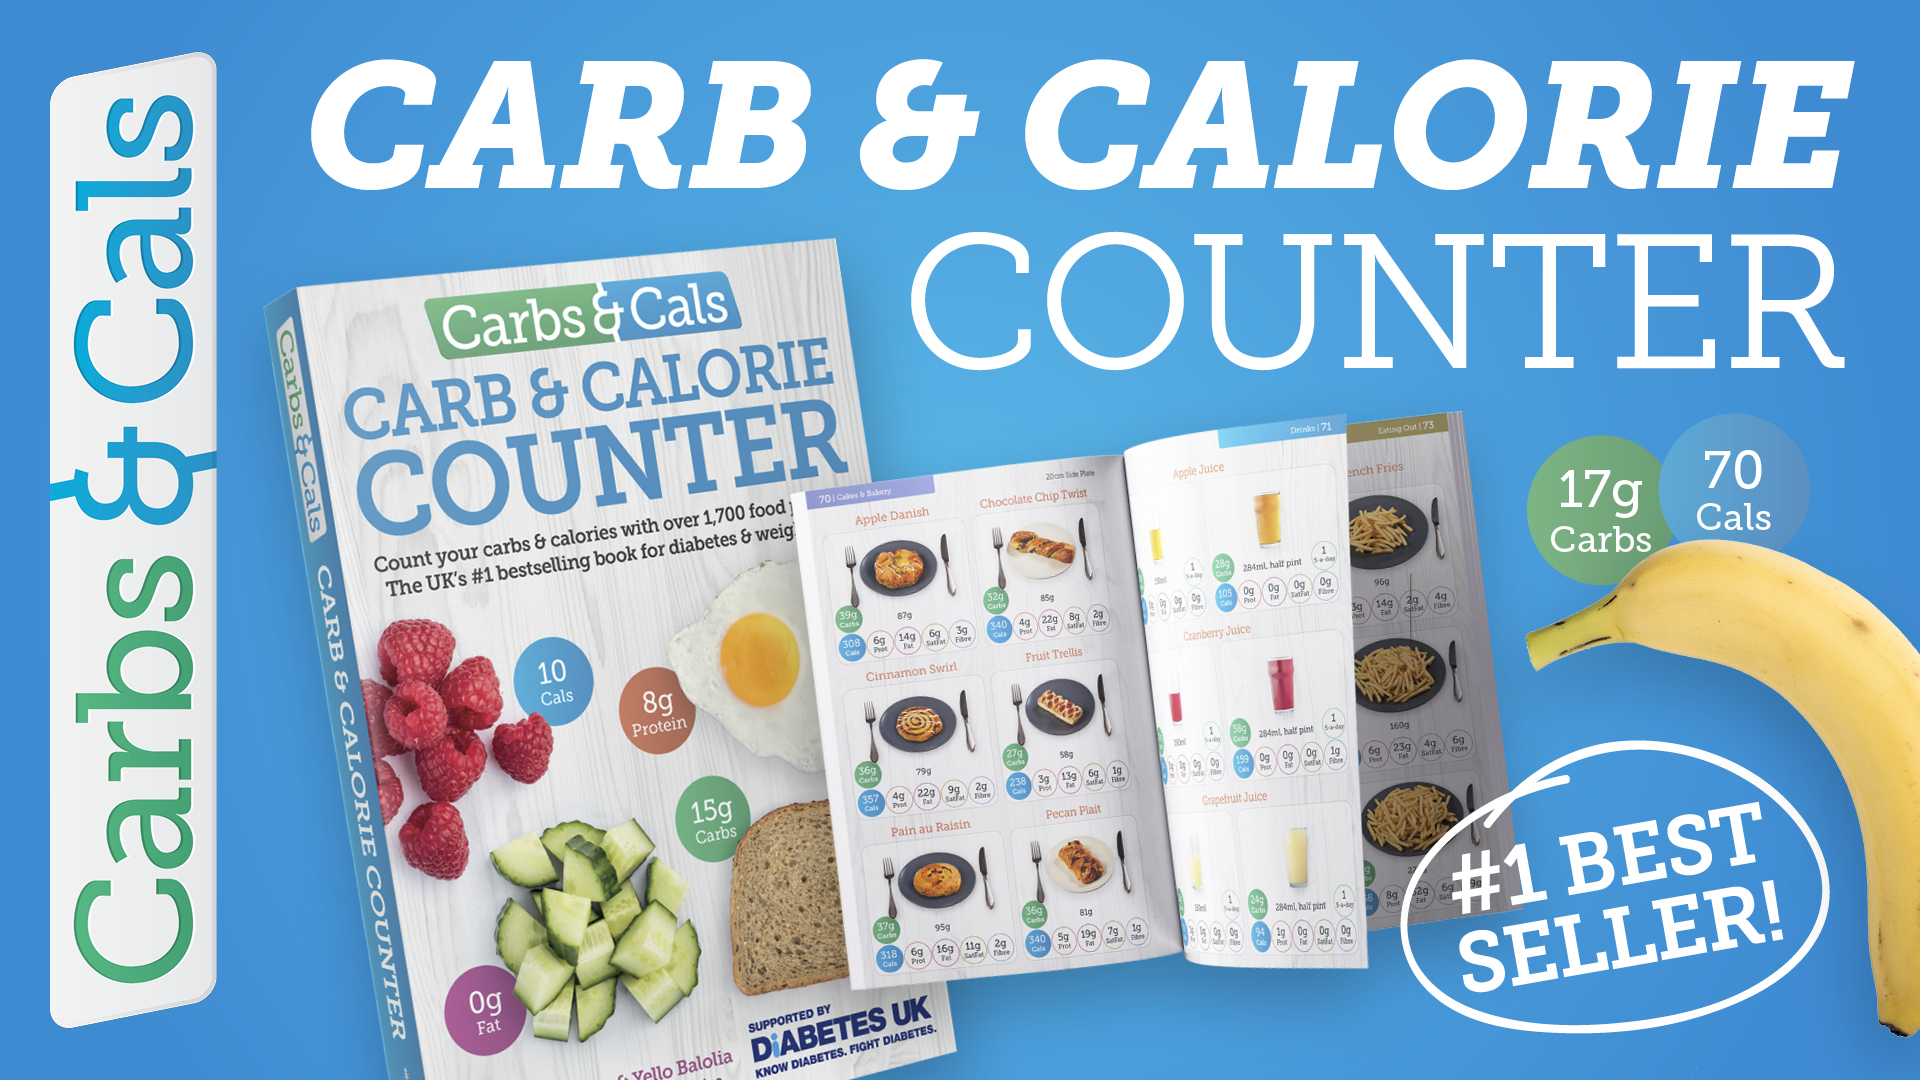 Video - Carbs & Cals Carb & Calorie Counter Book